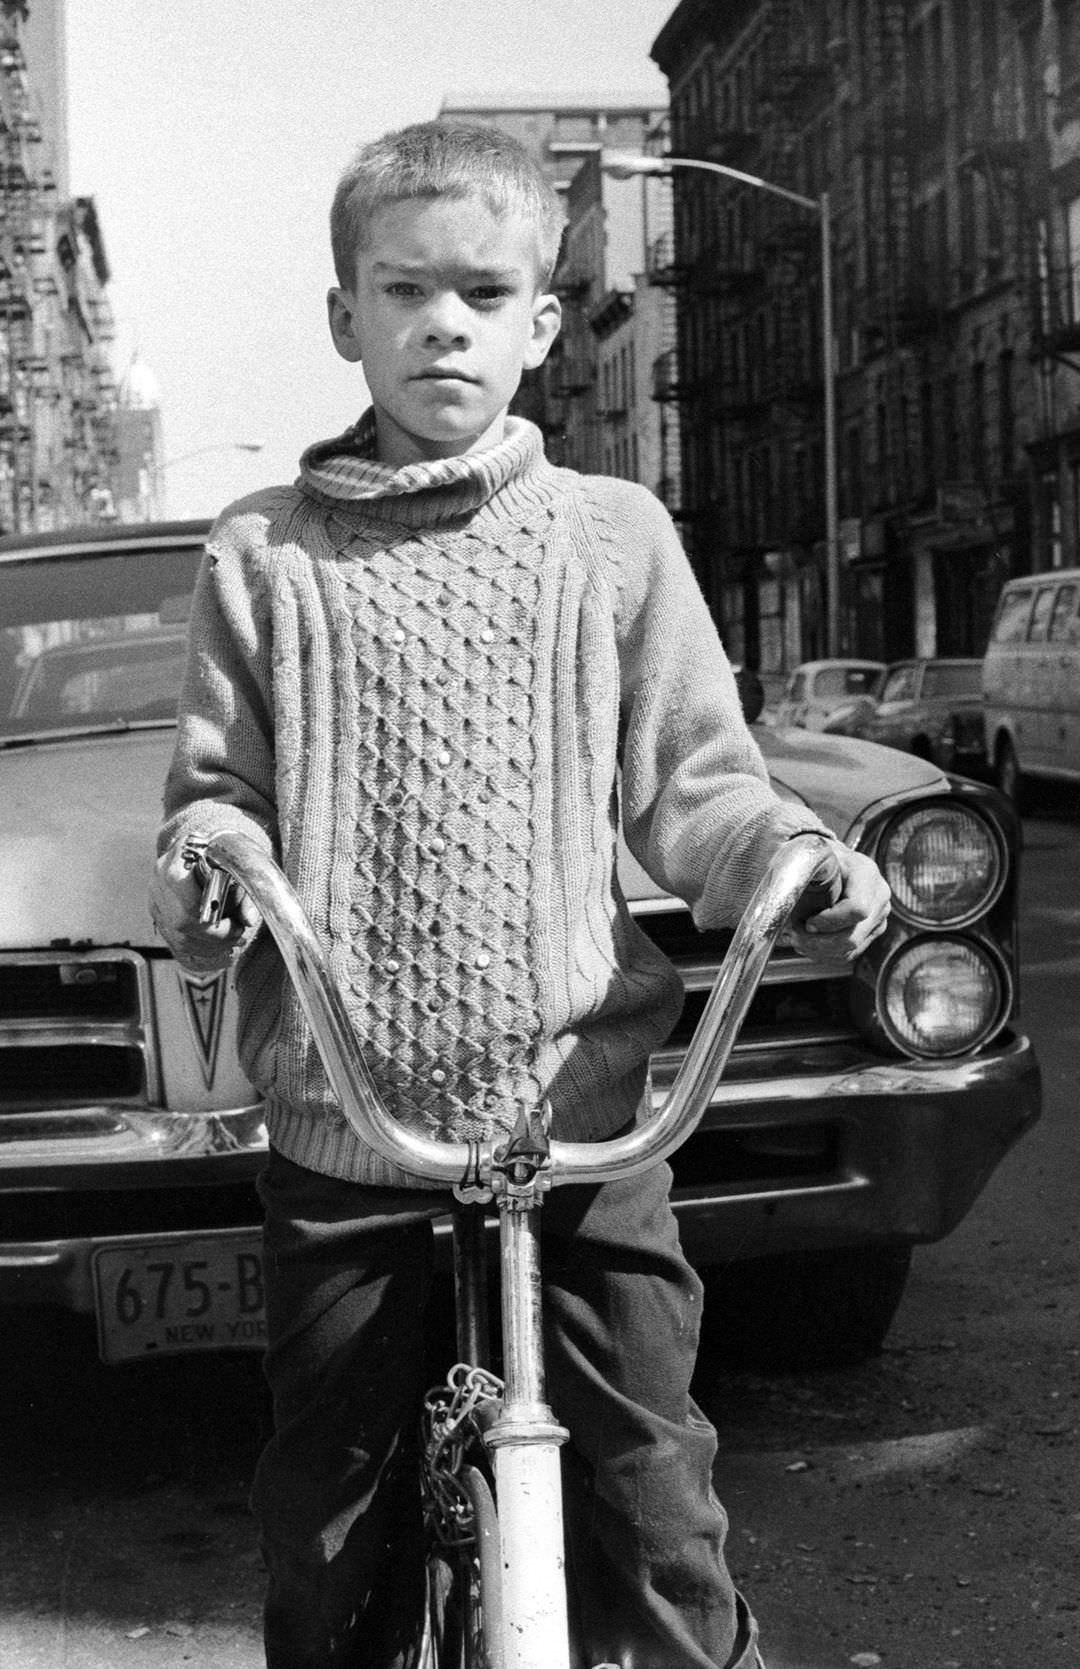 Fernando On East 3Rd Street, 1973